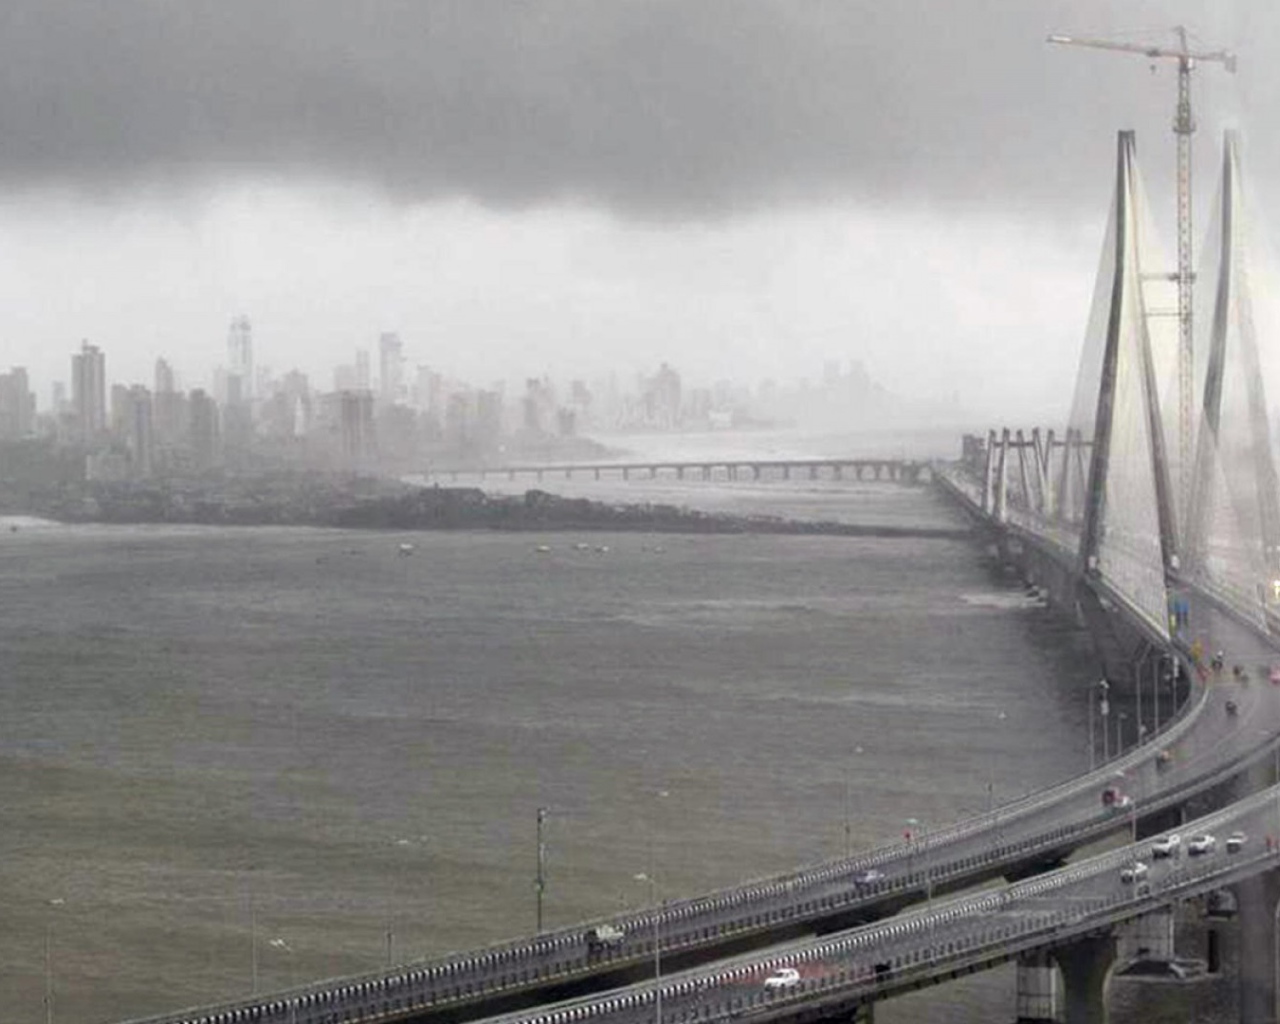 Мост в Мумбае во время шторма